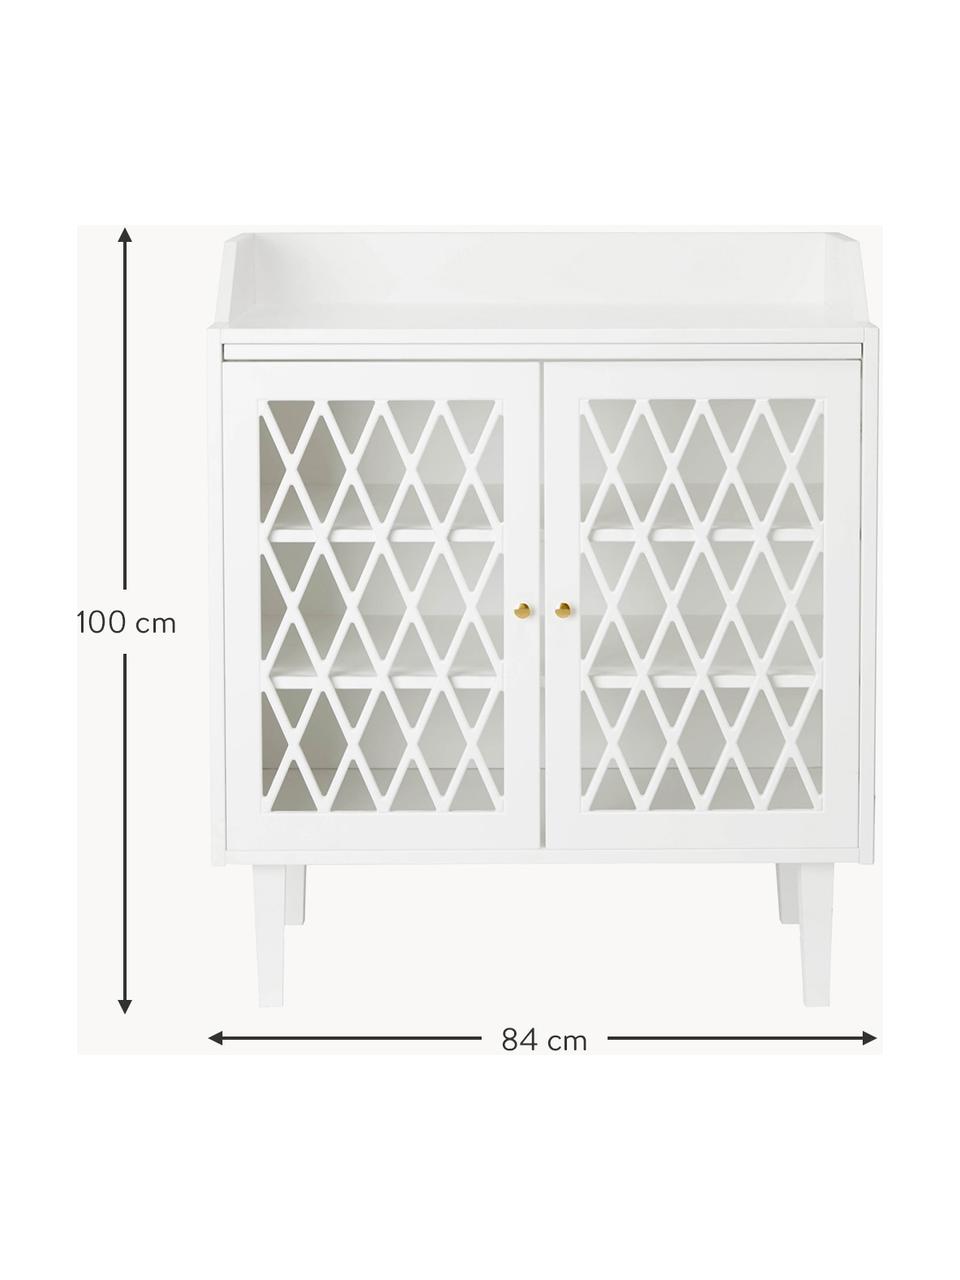 Přebalovací skříňka Harlequin, Dřevo, lakováno bílou barvou, Š 84 cm, V 100 cm